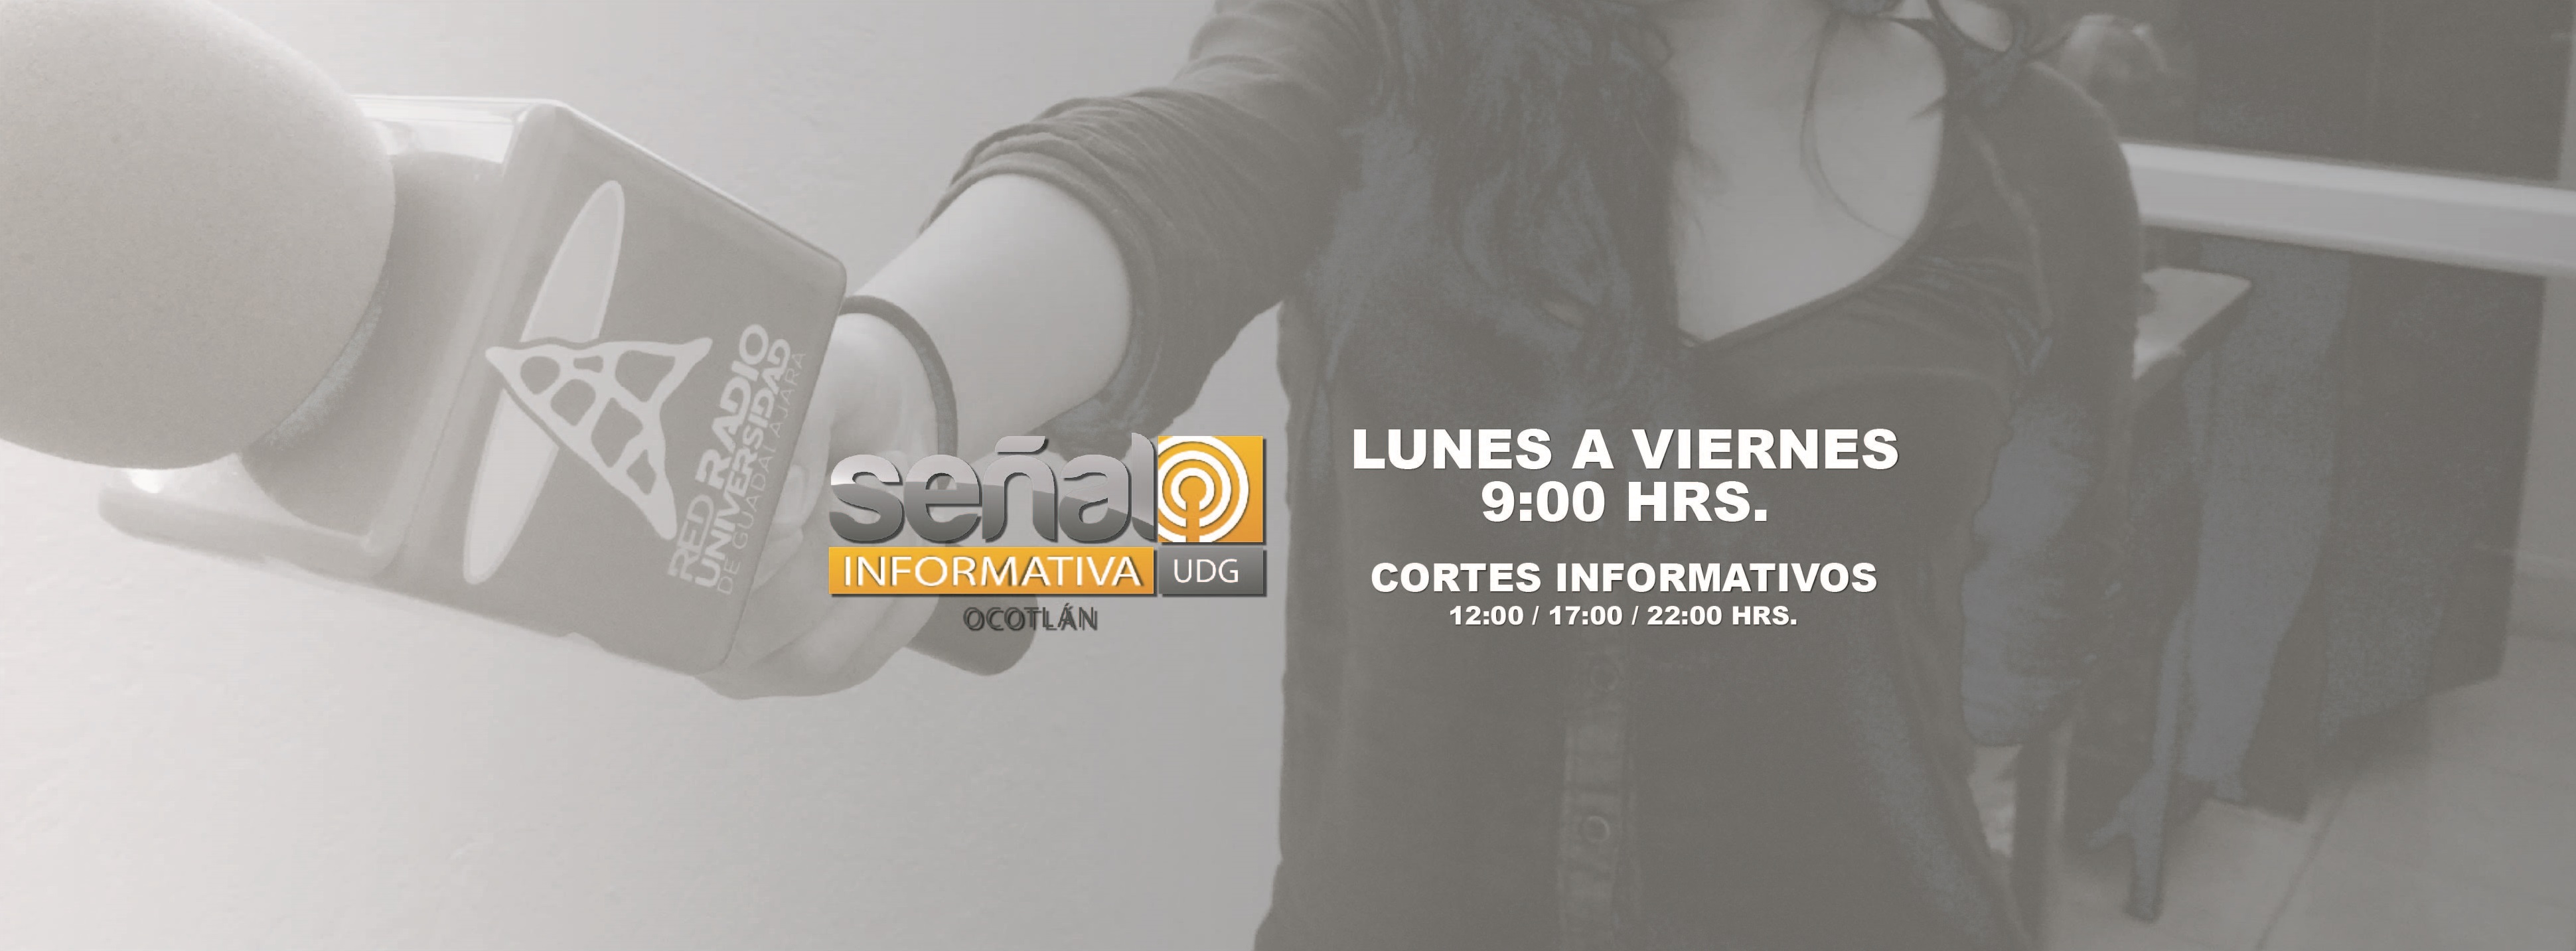 Señal Informativa Ocotlán | 13 de junio 2017